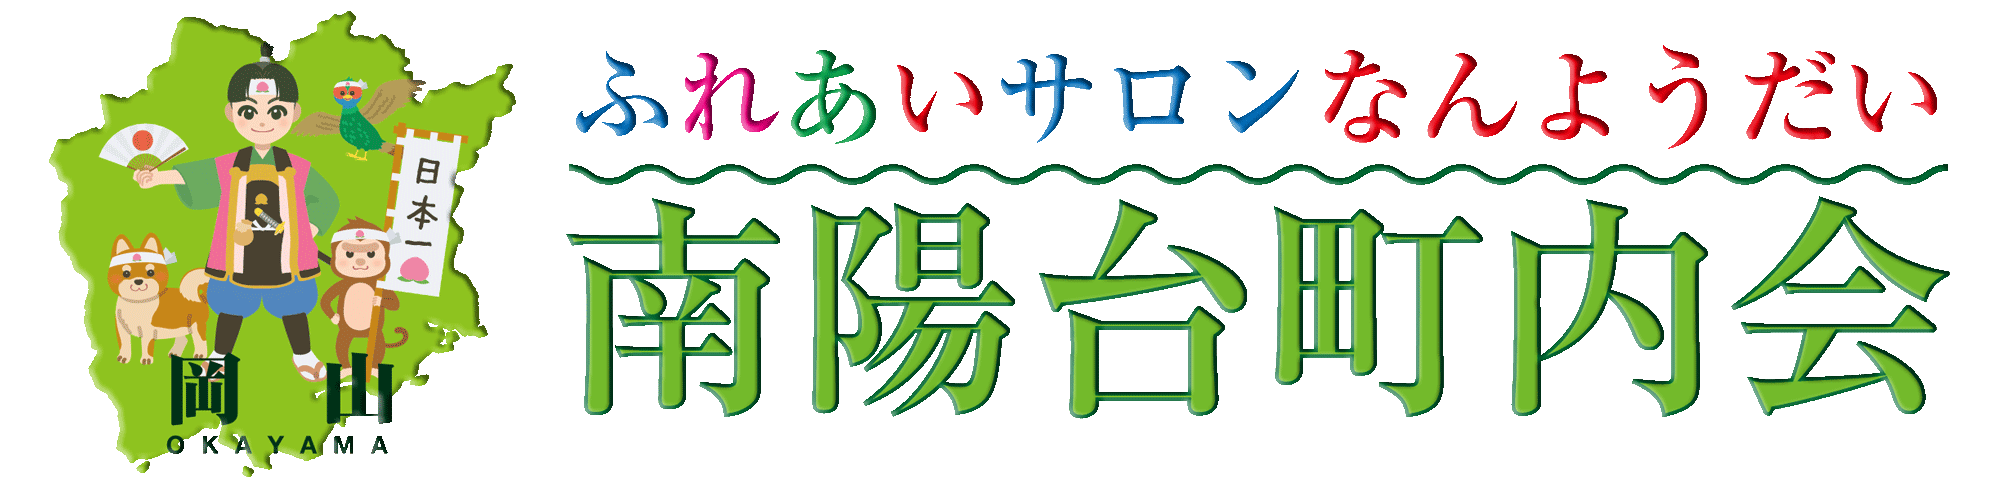 momotaro-logo_01